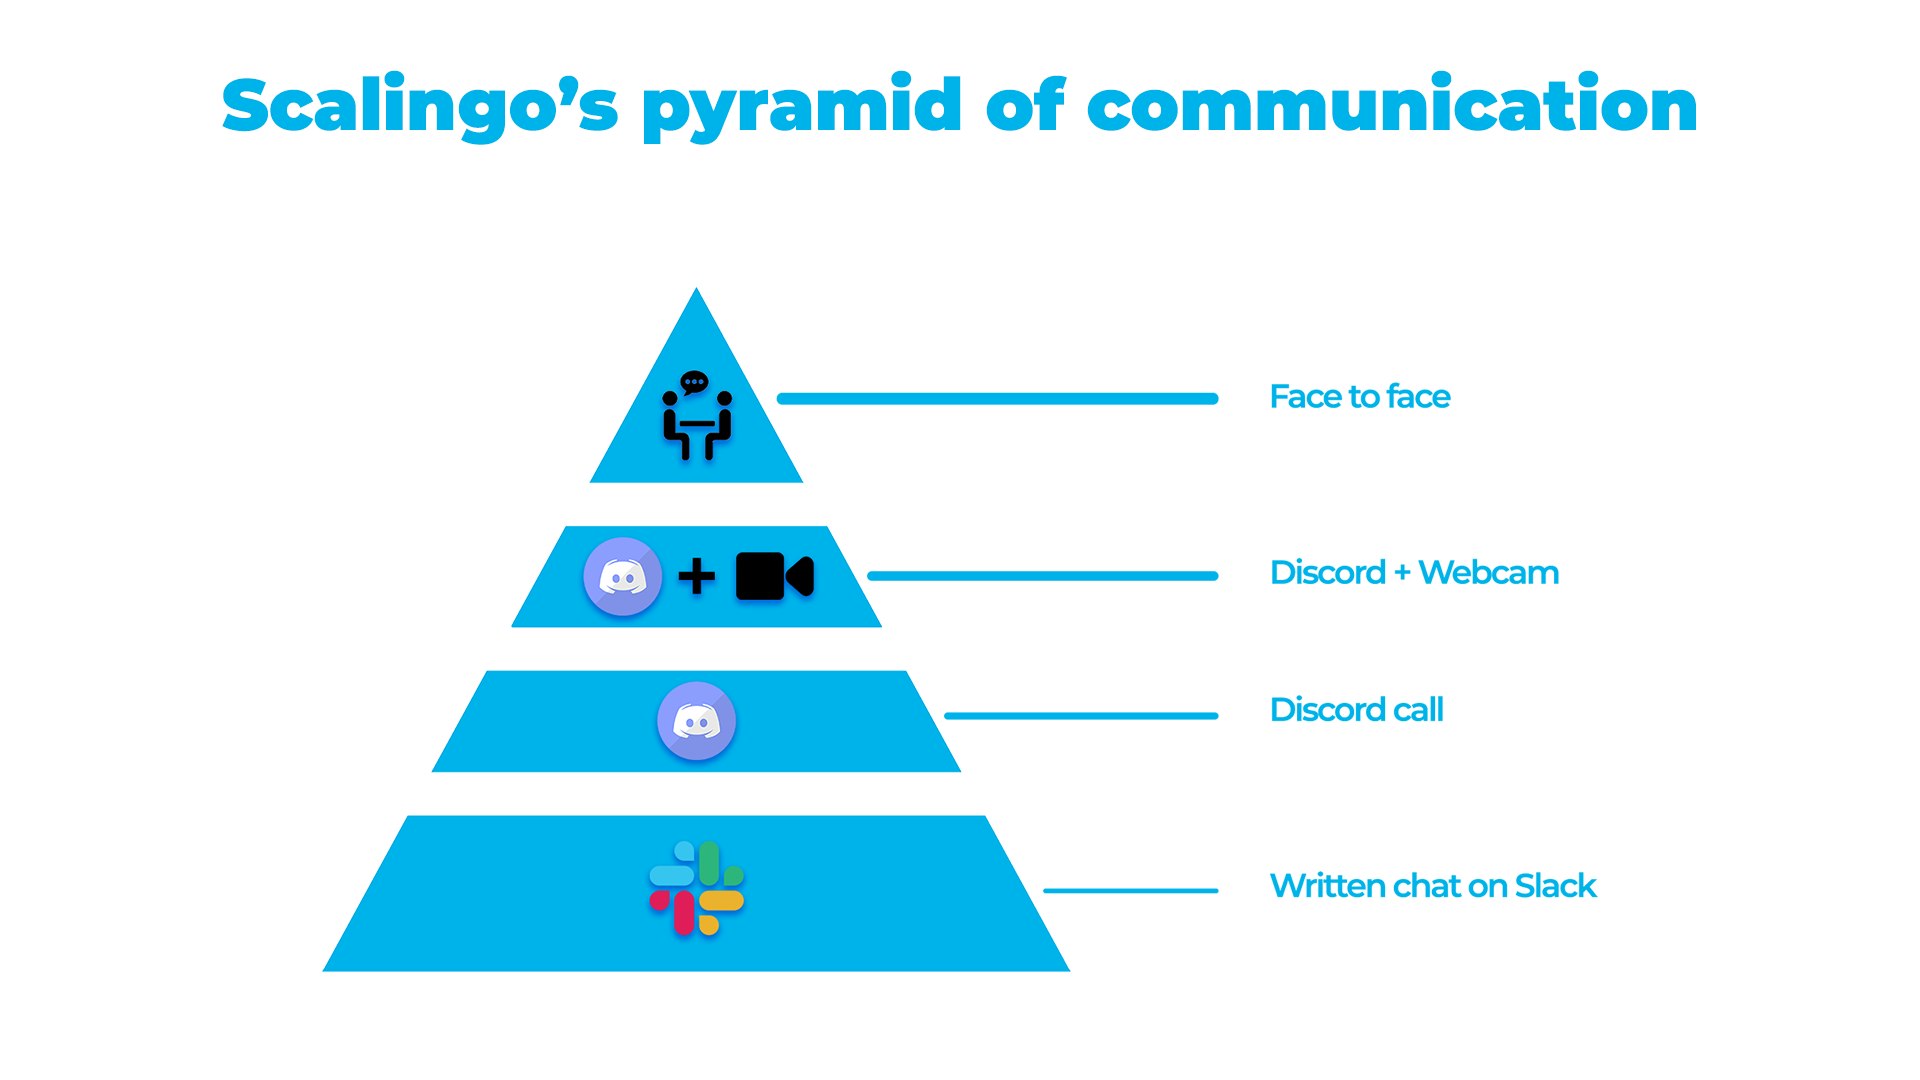 Scalingo's pyramid of communication